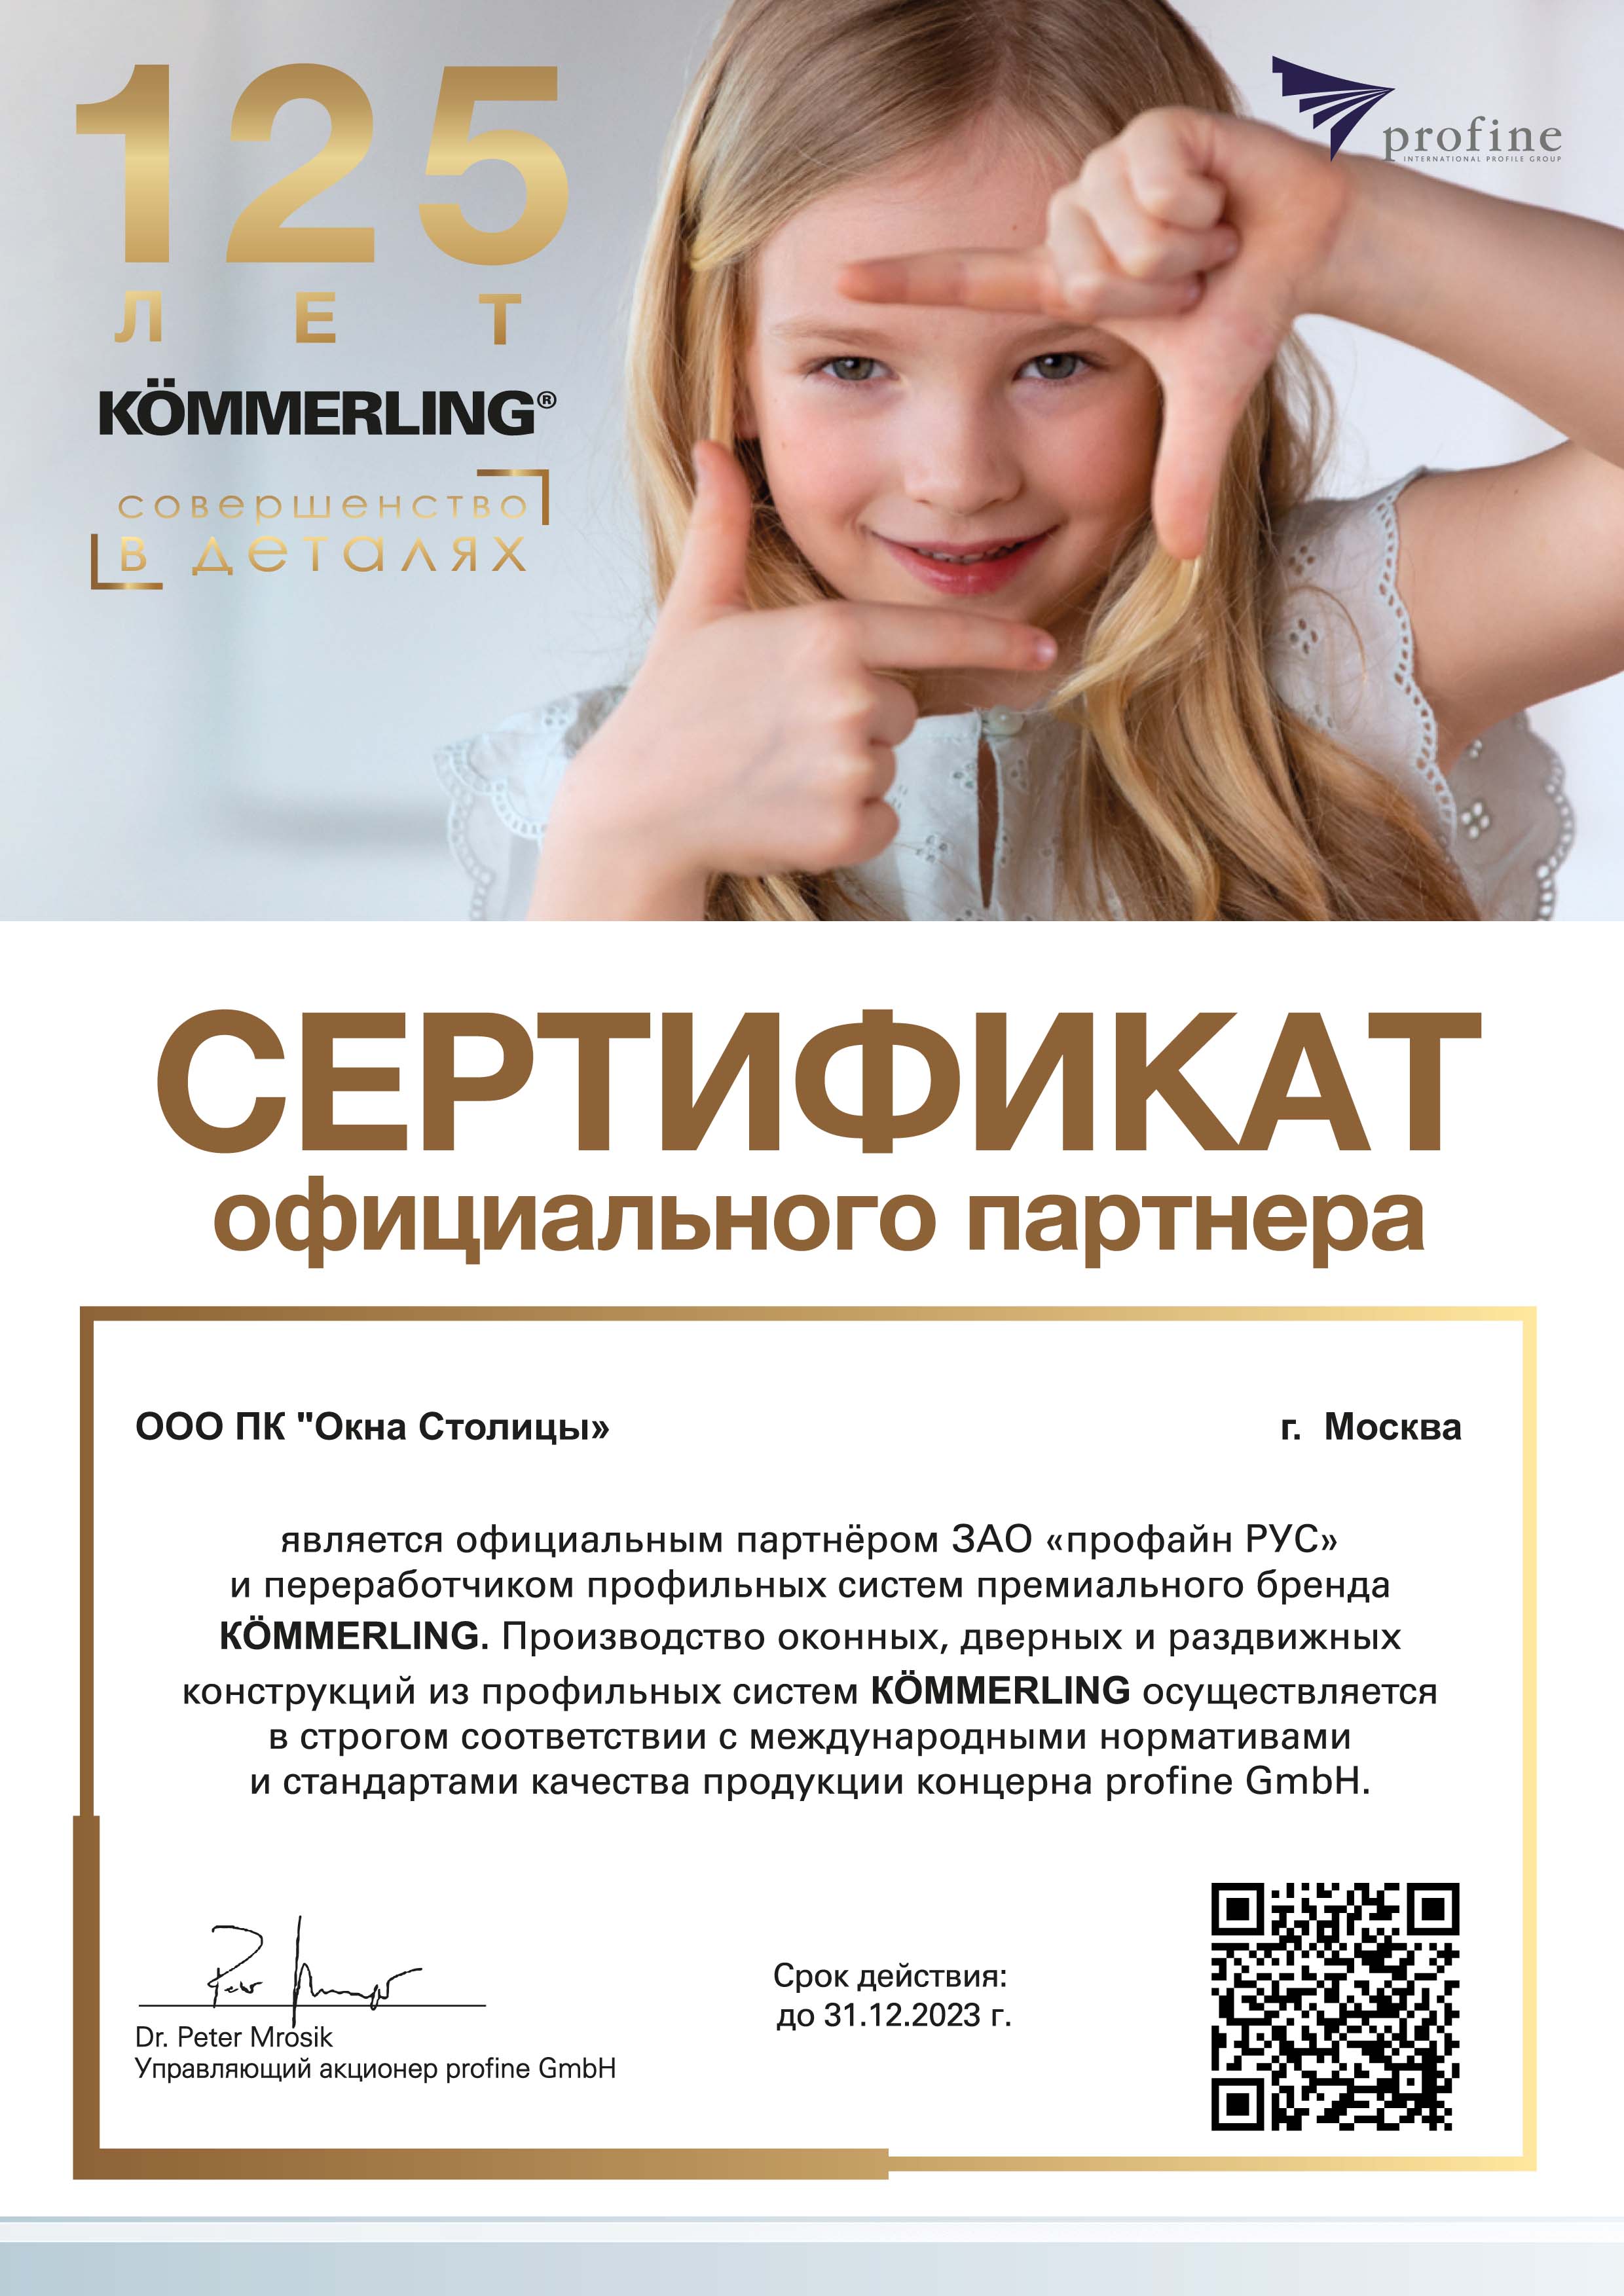 Профайн РУС (KÖMMERLING), сертификат официального партнера, 31.12.2023